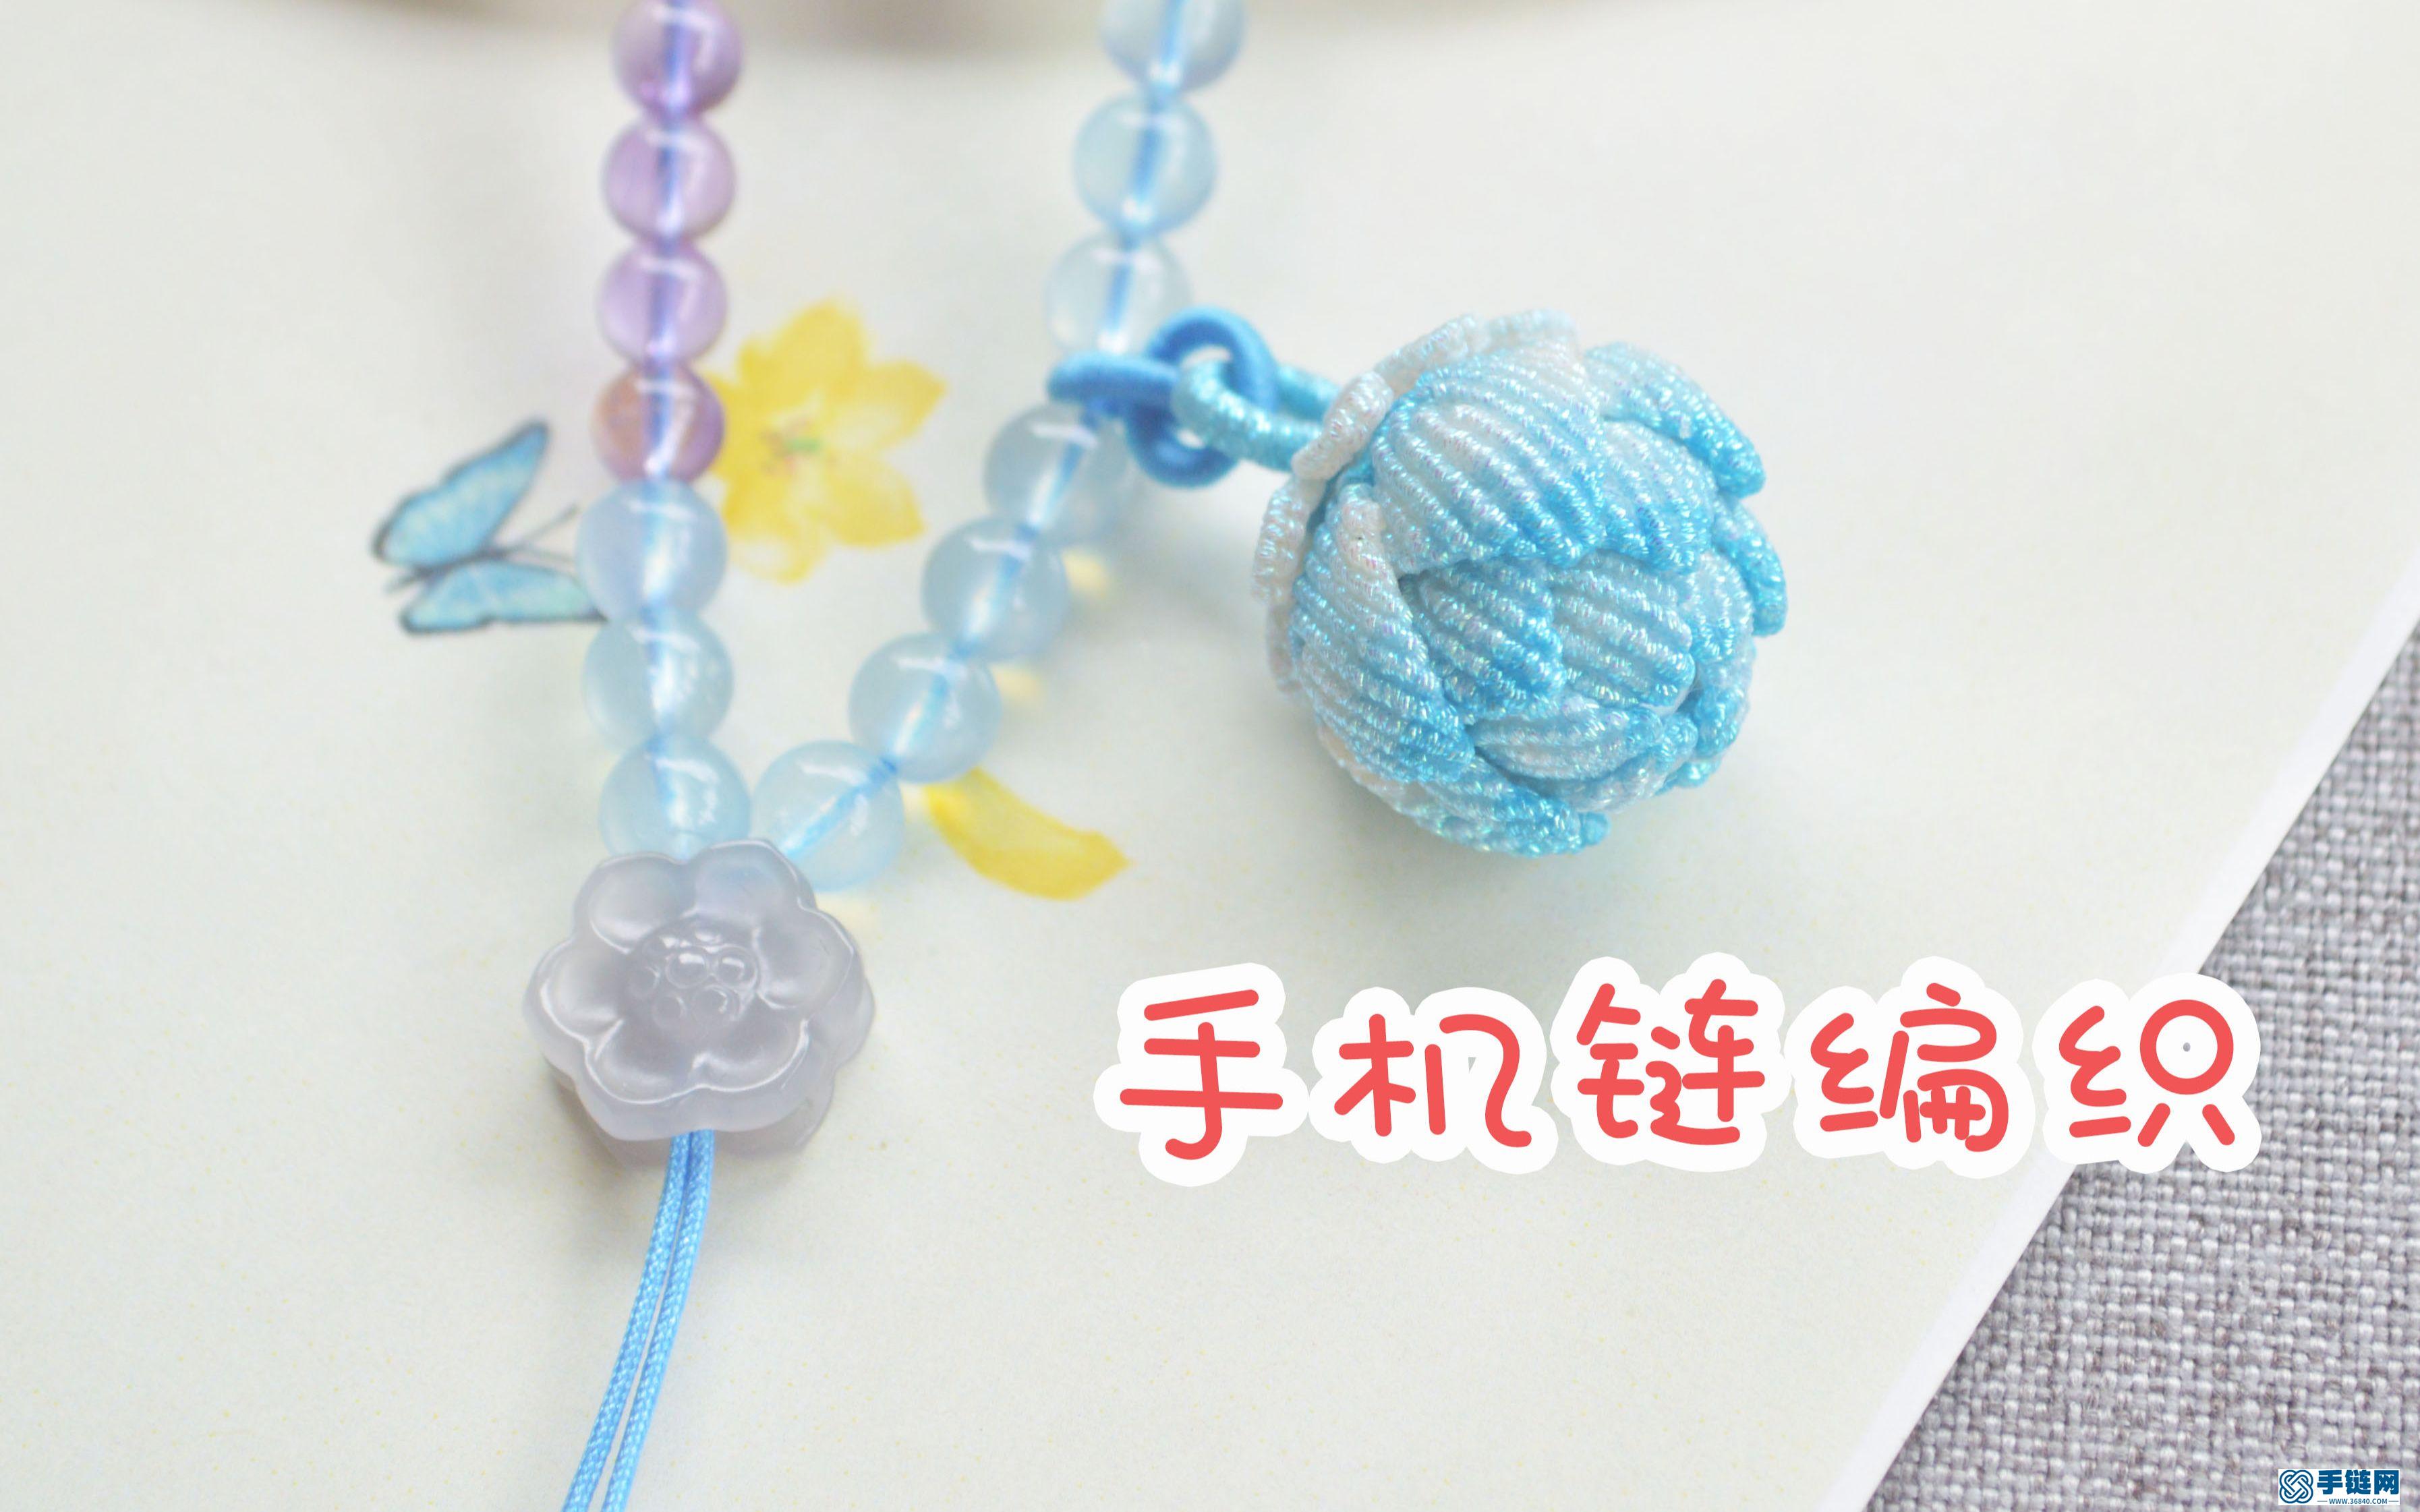 中国风手机链，有小碎珠子在家就能编织，不会蛇结也能做出来